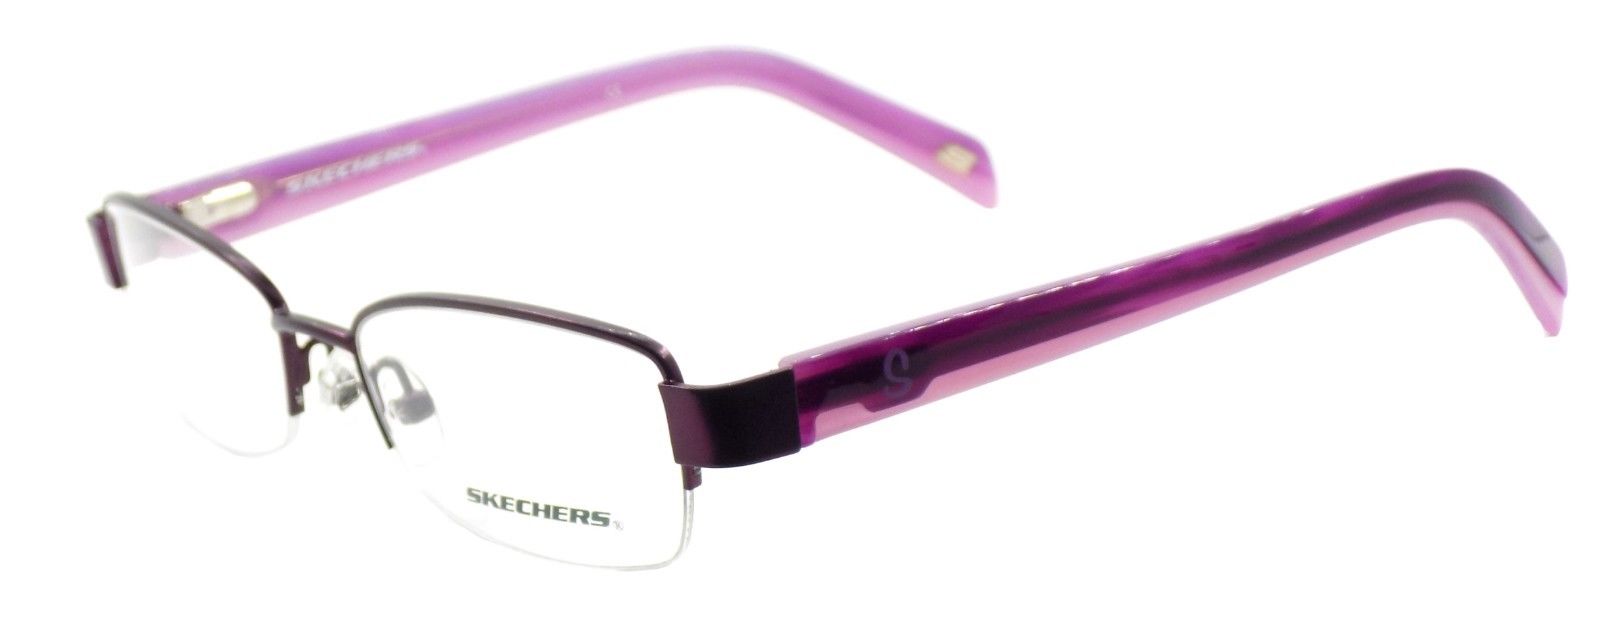 1-SKECHERS SK2084 SBUR Women's Eyeglasses Frames 49-17-135 Satin Burgundy + CASE-715583732865-IKSpecs